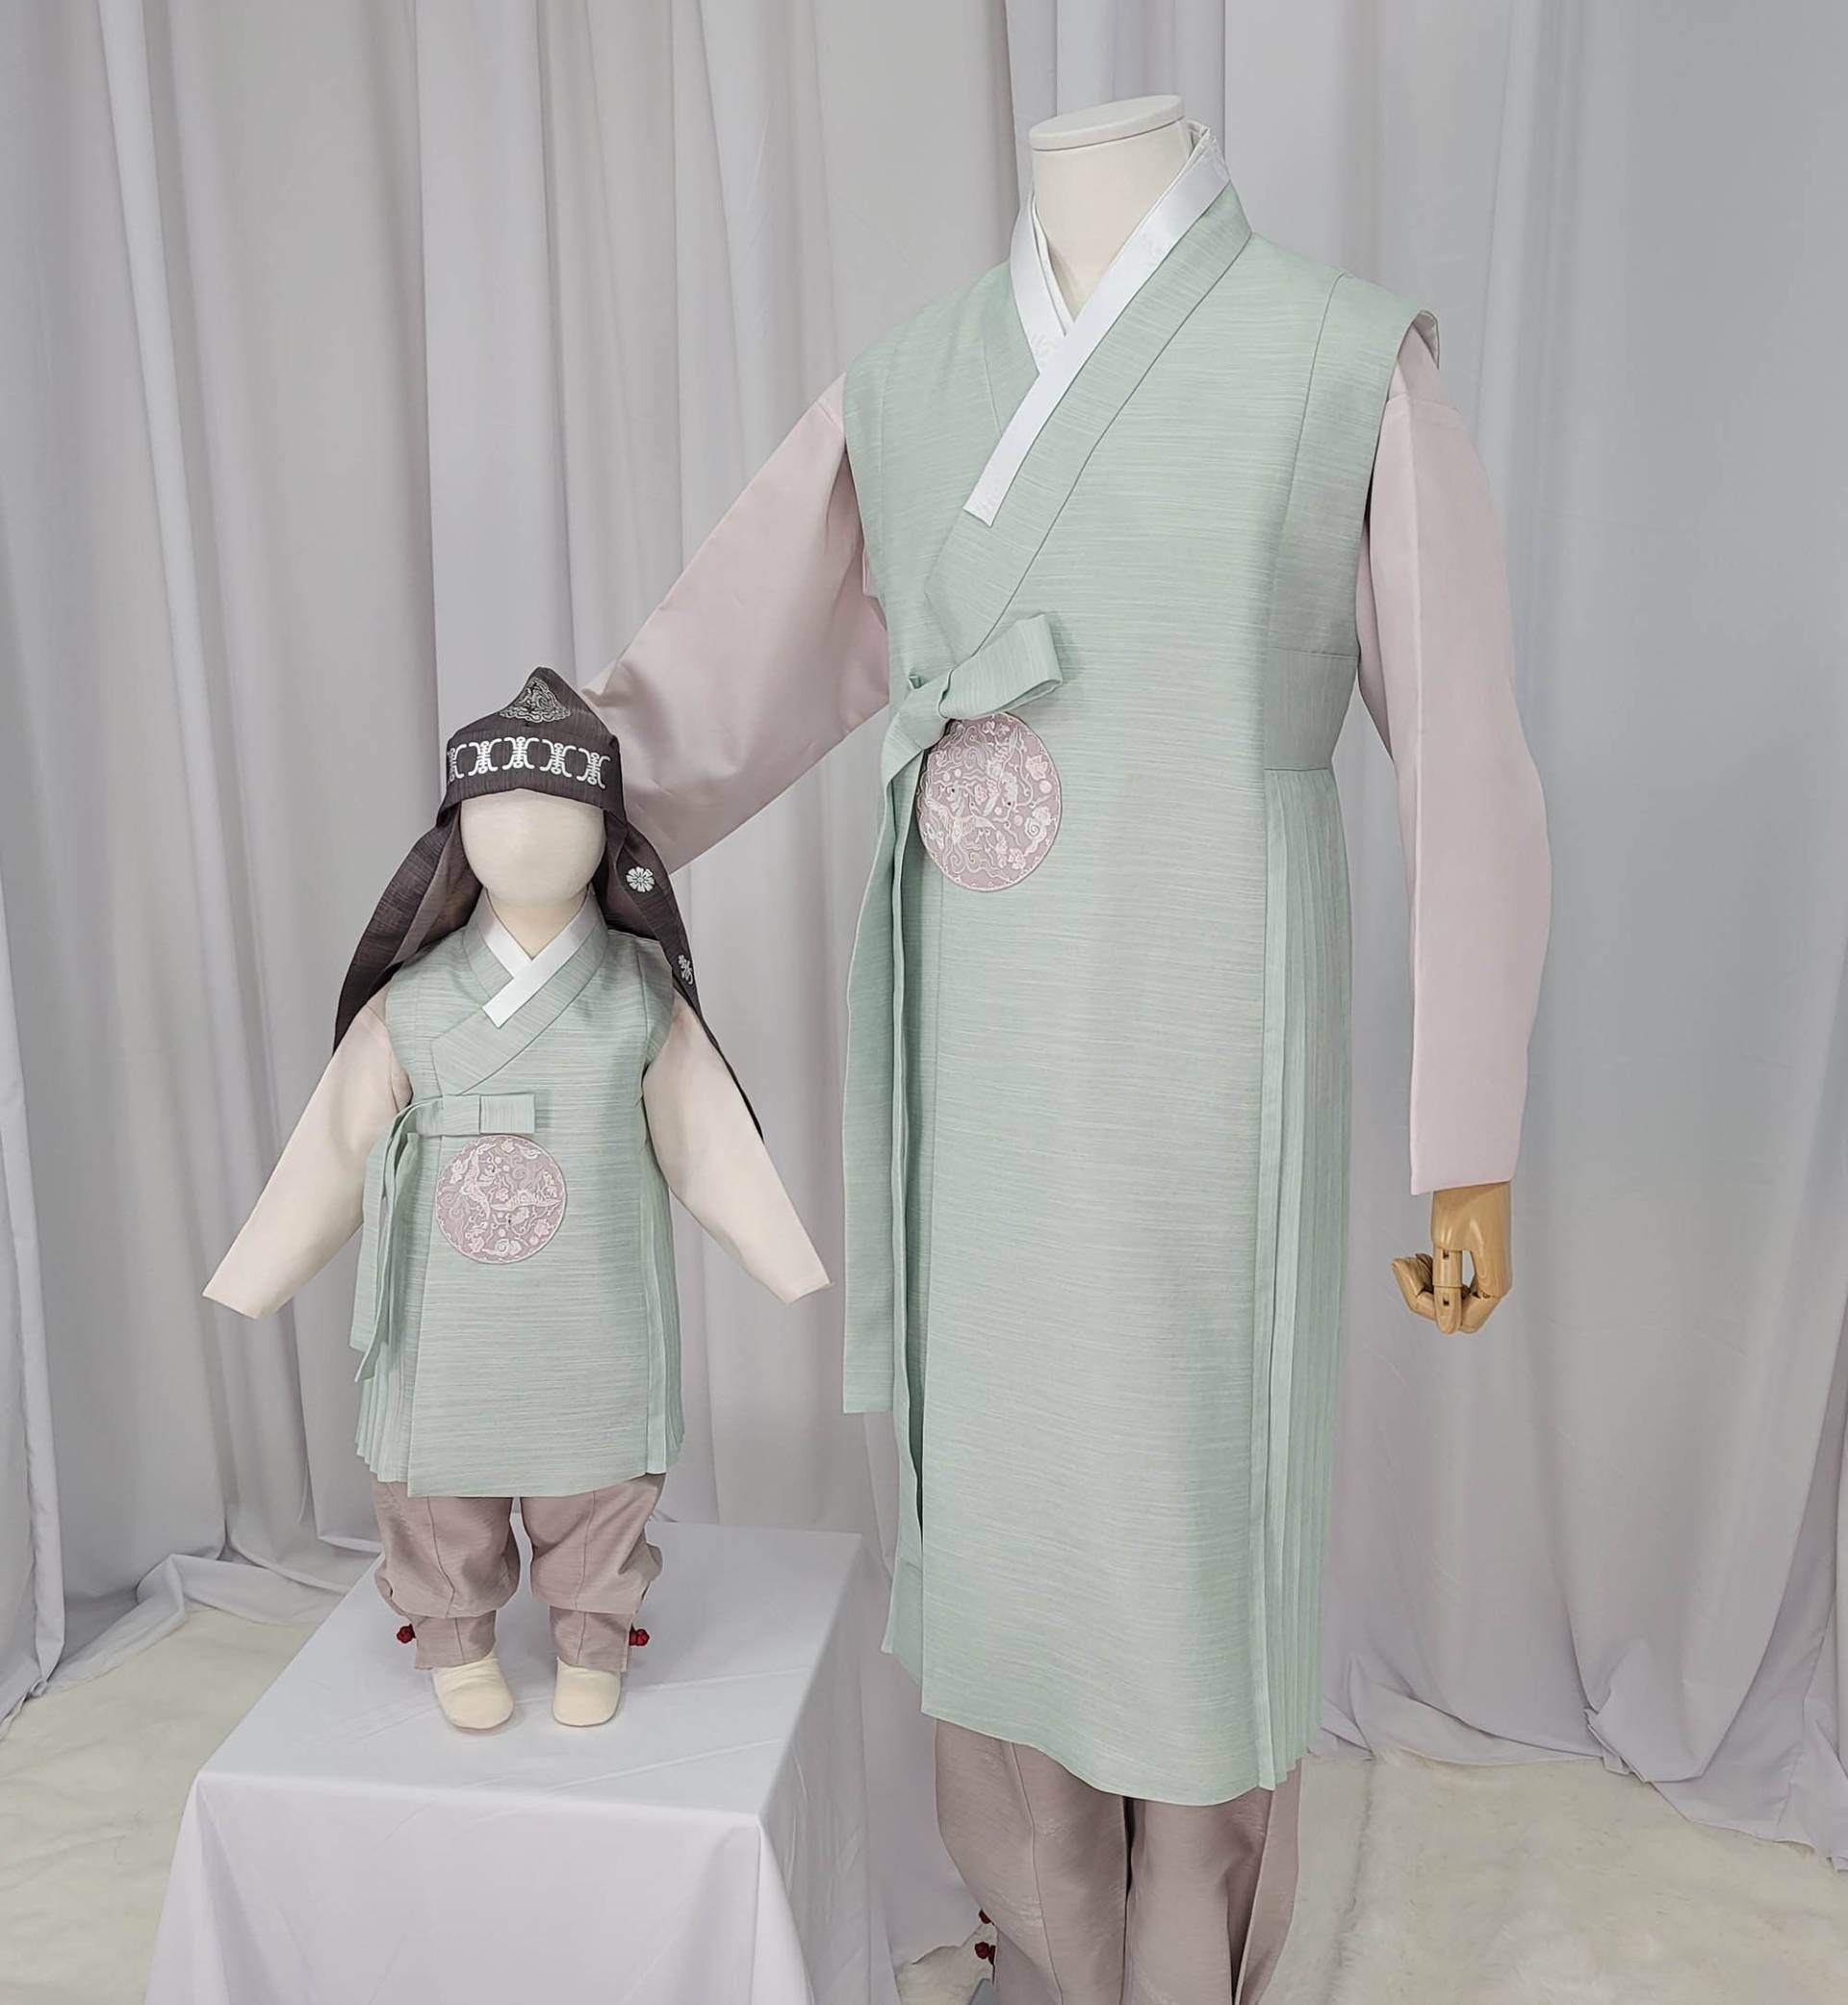 Mann Hanbok Male Korea Traditionelle Kleidung Set Hochzeitszeremonie Geburtstag König Prinz Design Jeogori Weste Panst Pastell Mint Plissee Mh014 von bellahanbok